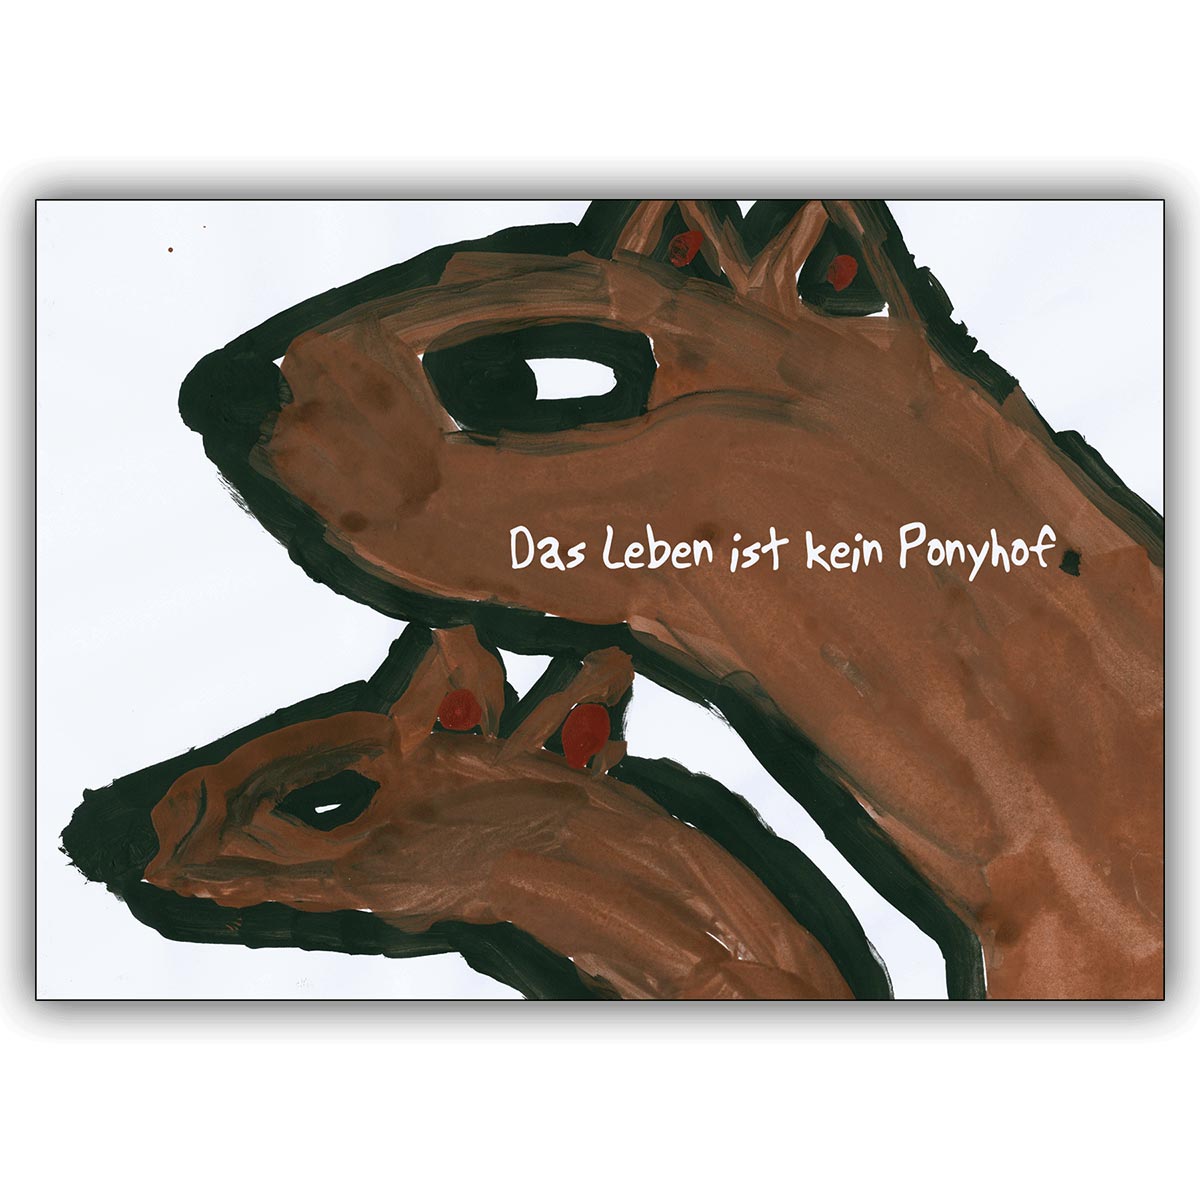 Coole Spruch Grusskarte mit Wölfen: Das Leben ist kein Ponyhof